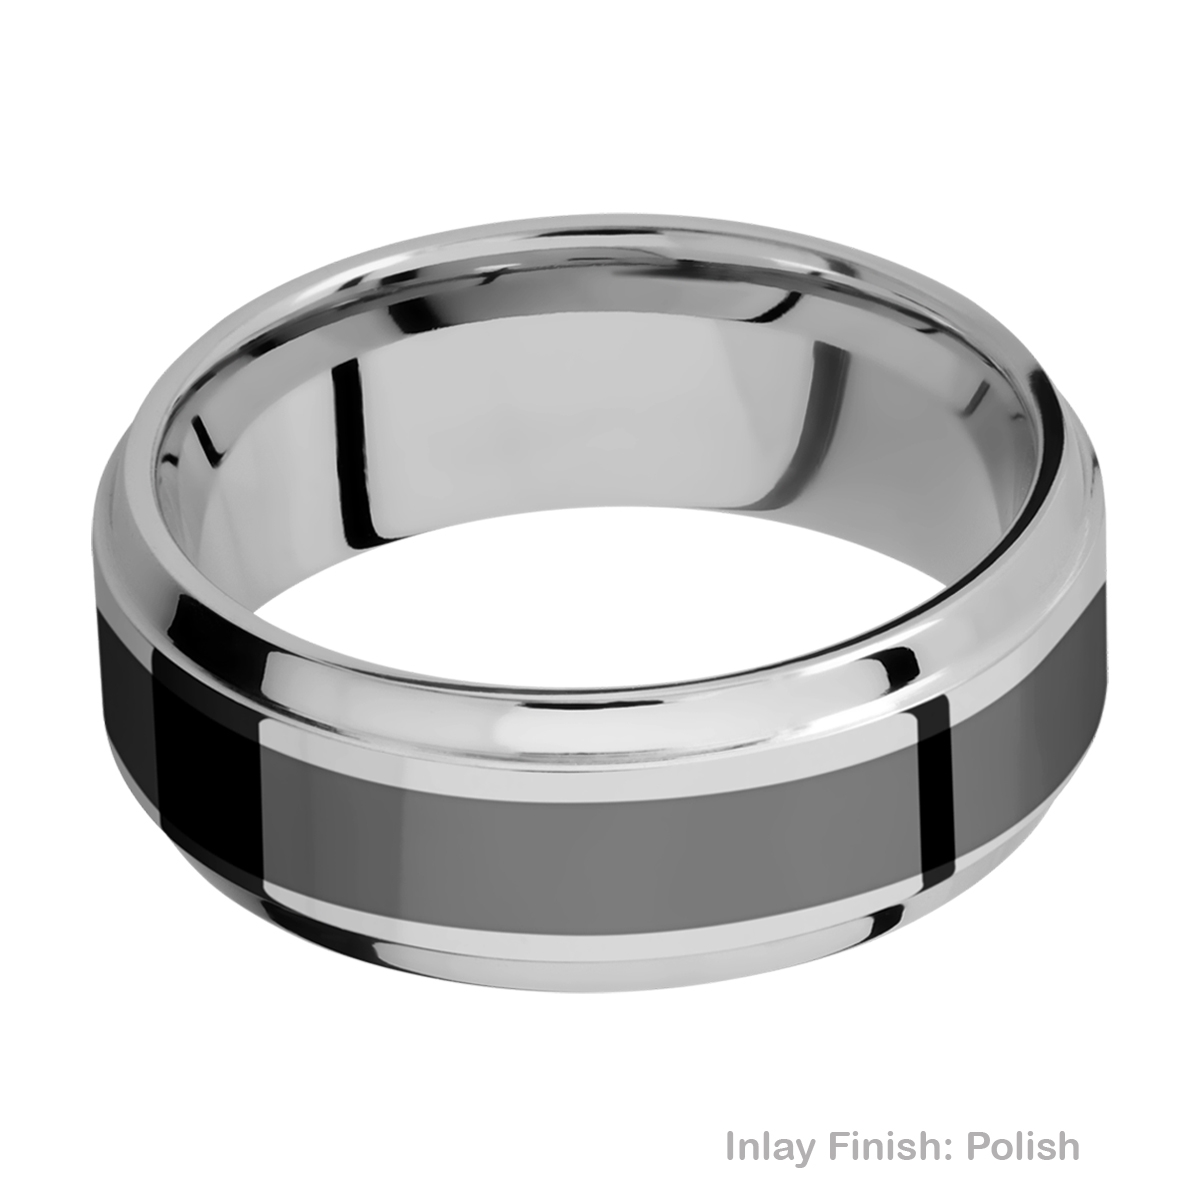 Lashbrook PF8B14(S)/ZIRCONIUM Titanium Wedding Ring or Band